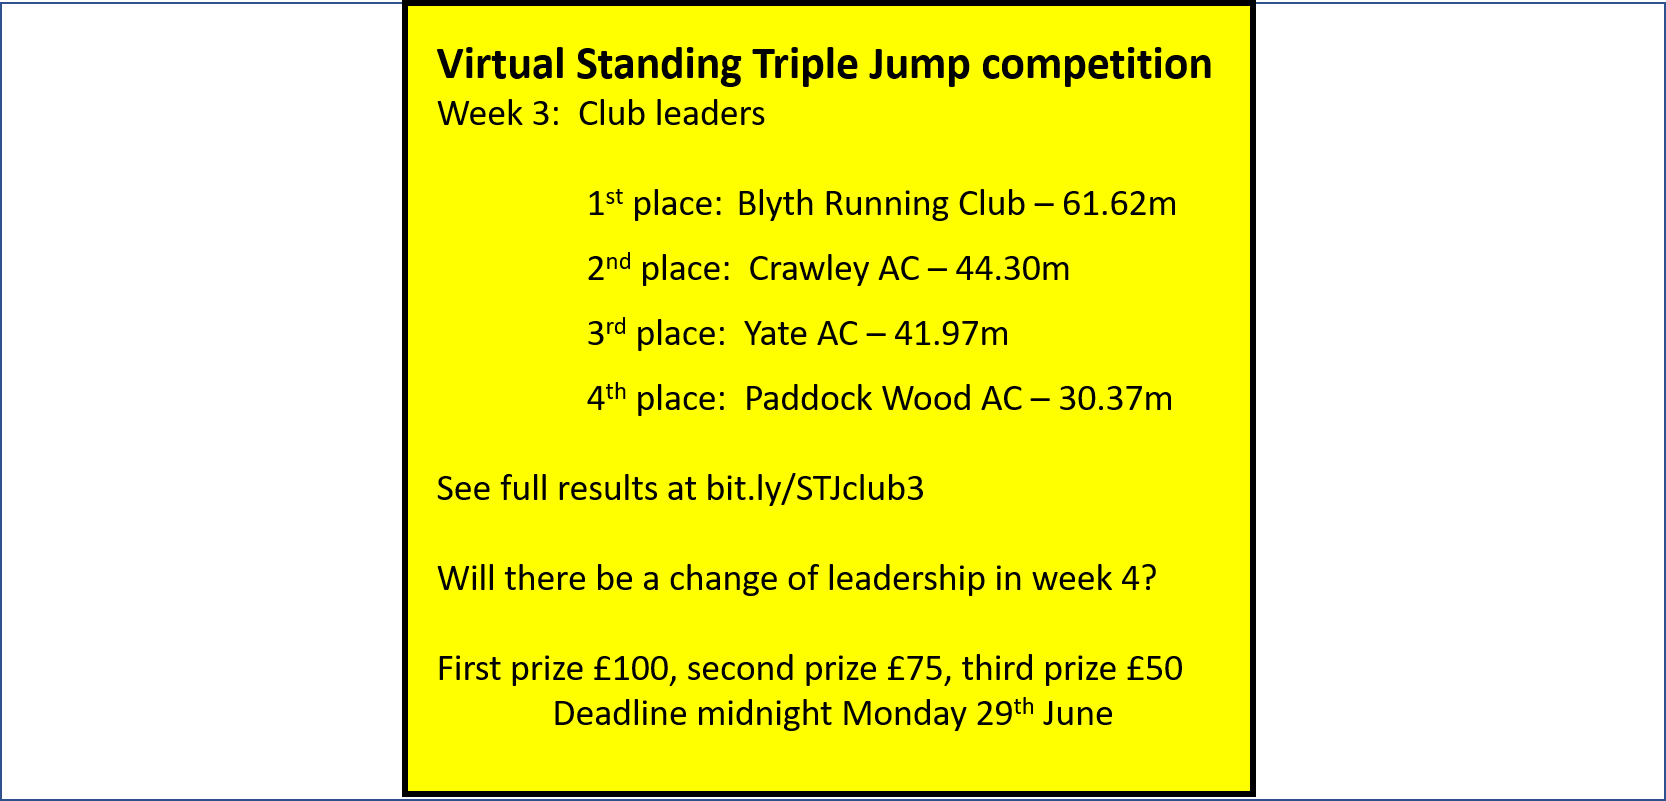 Virtual Standing Triple Jump : Week 3 club leaderboard